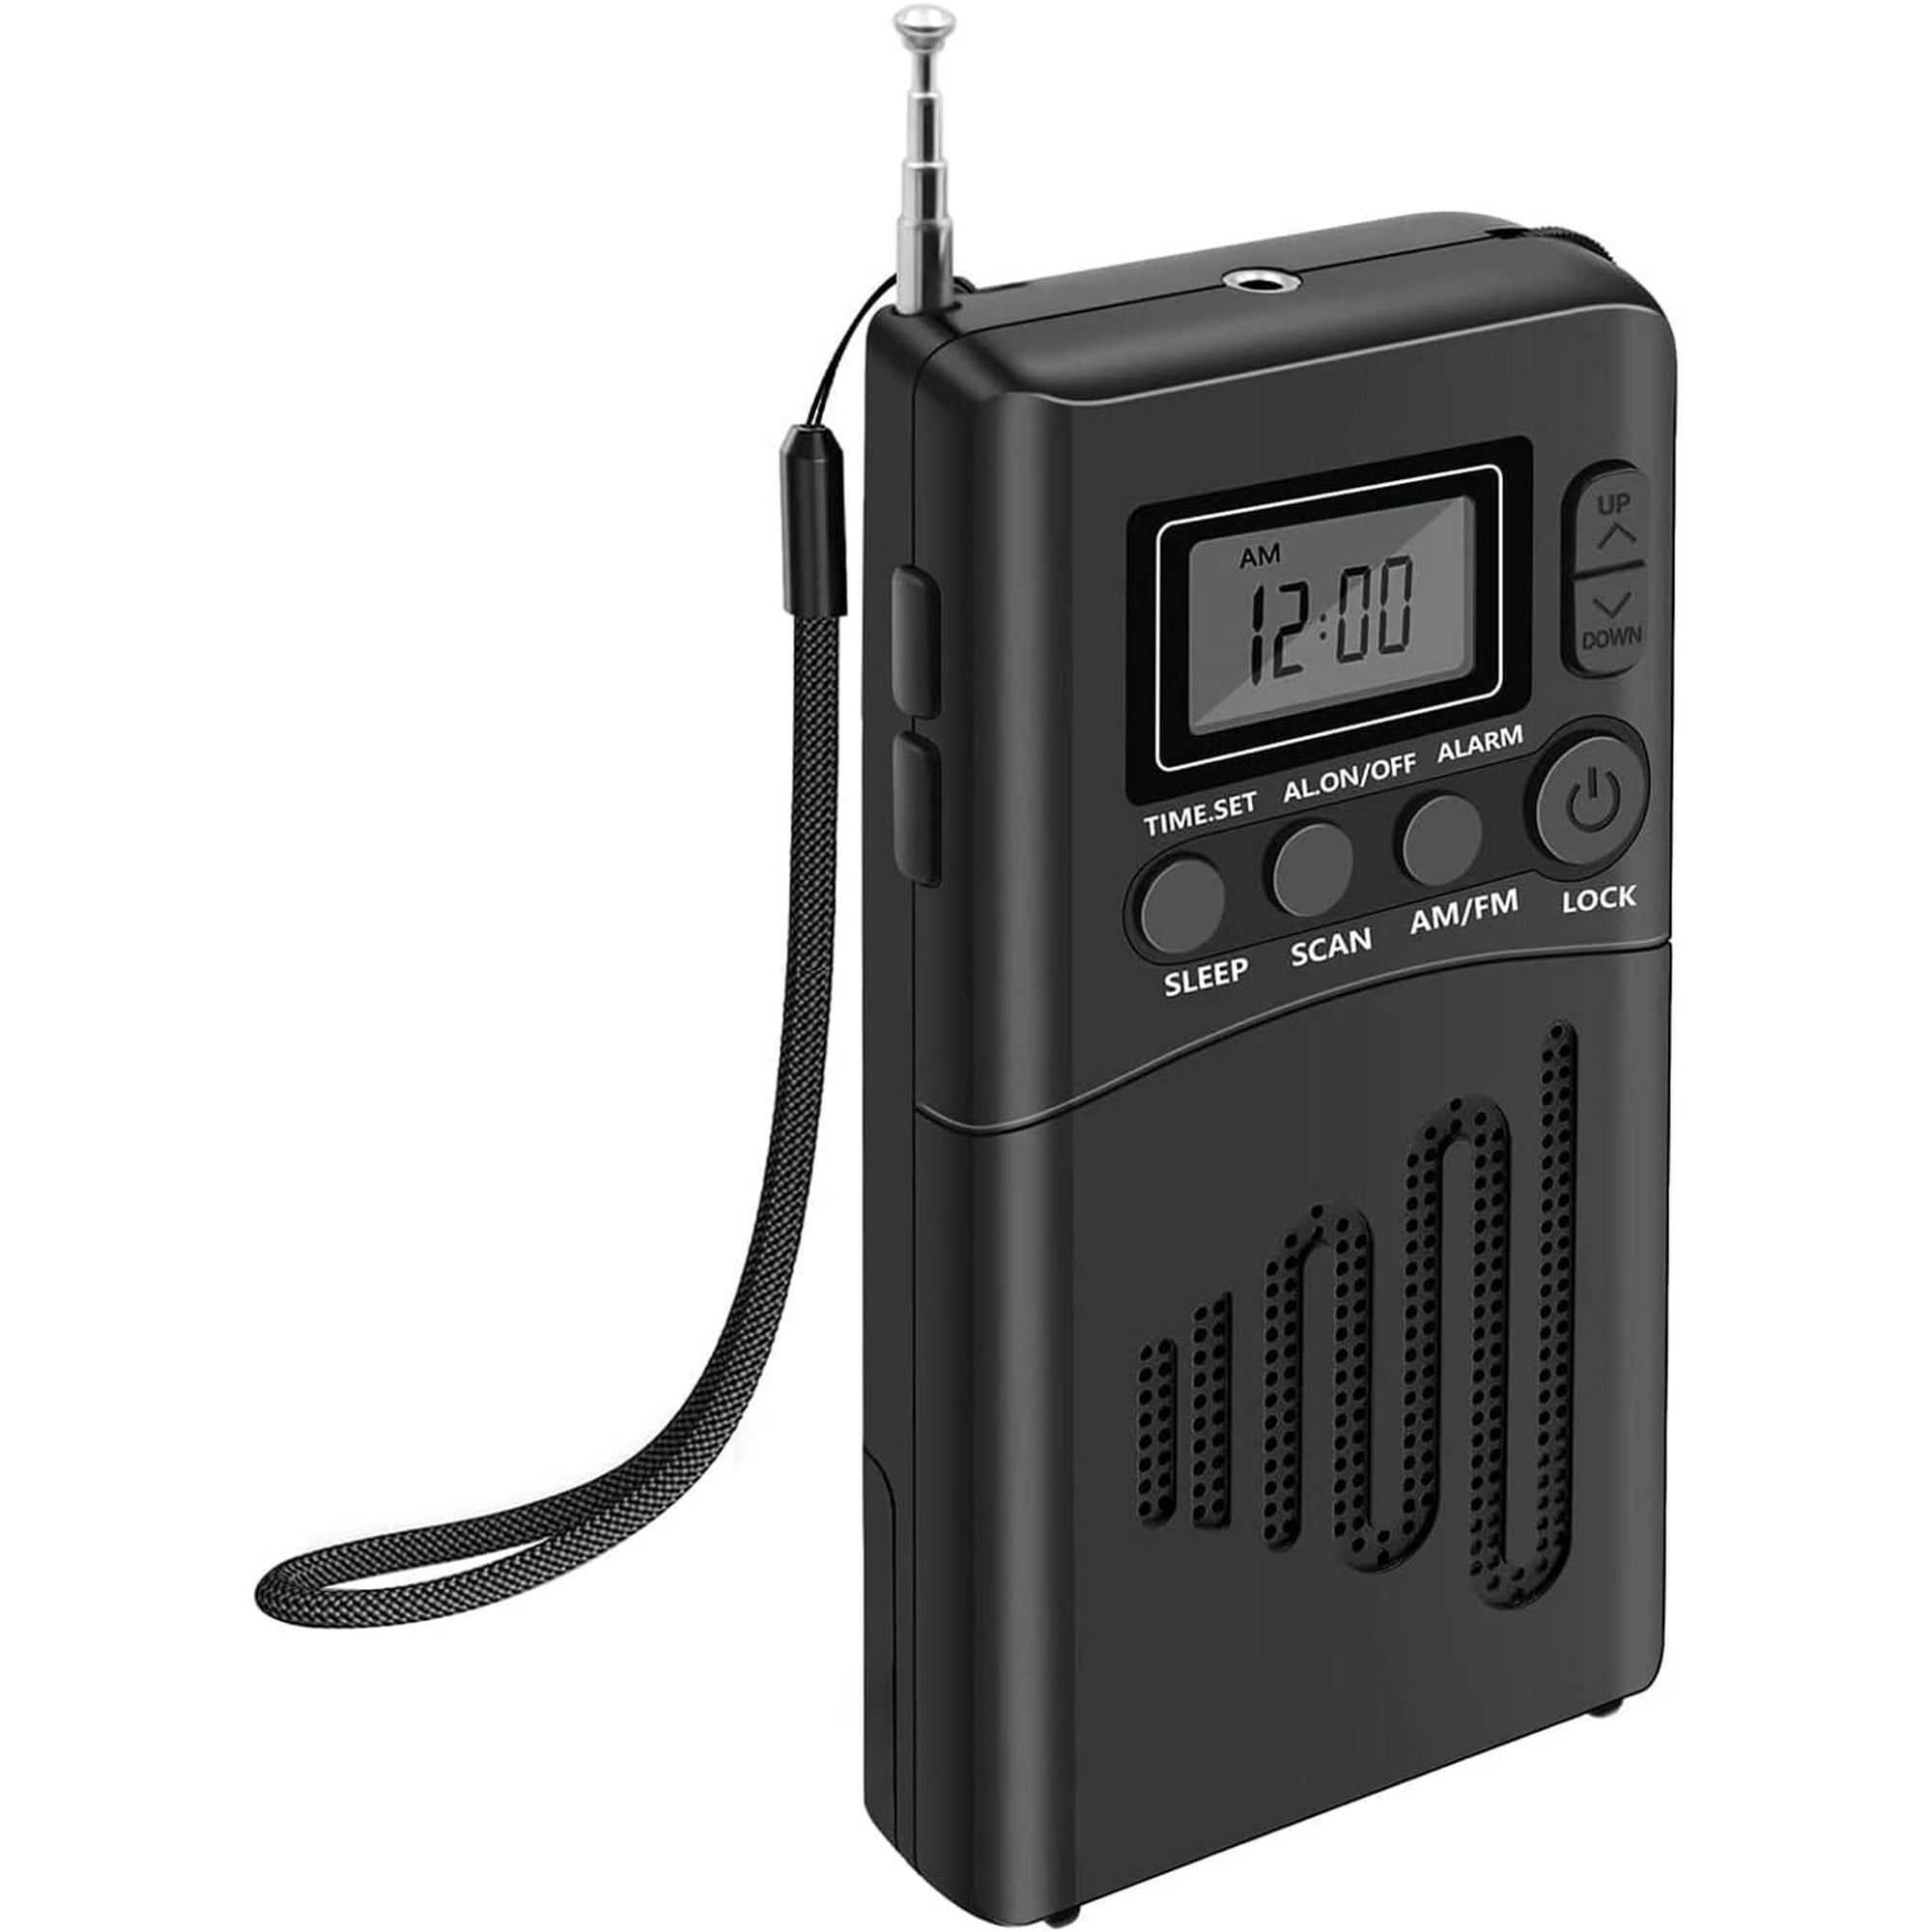 Radio portátil, radio pequeña Fm / am, radio de transistores con excelente  recepción y calidad de sonido / conector para auriculares, fácil de usar,  radio de bolsillo adecuada para